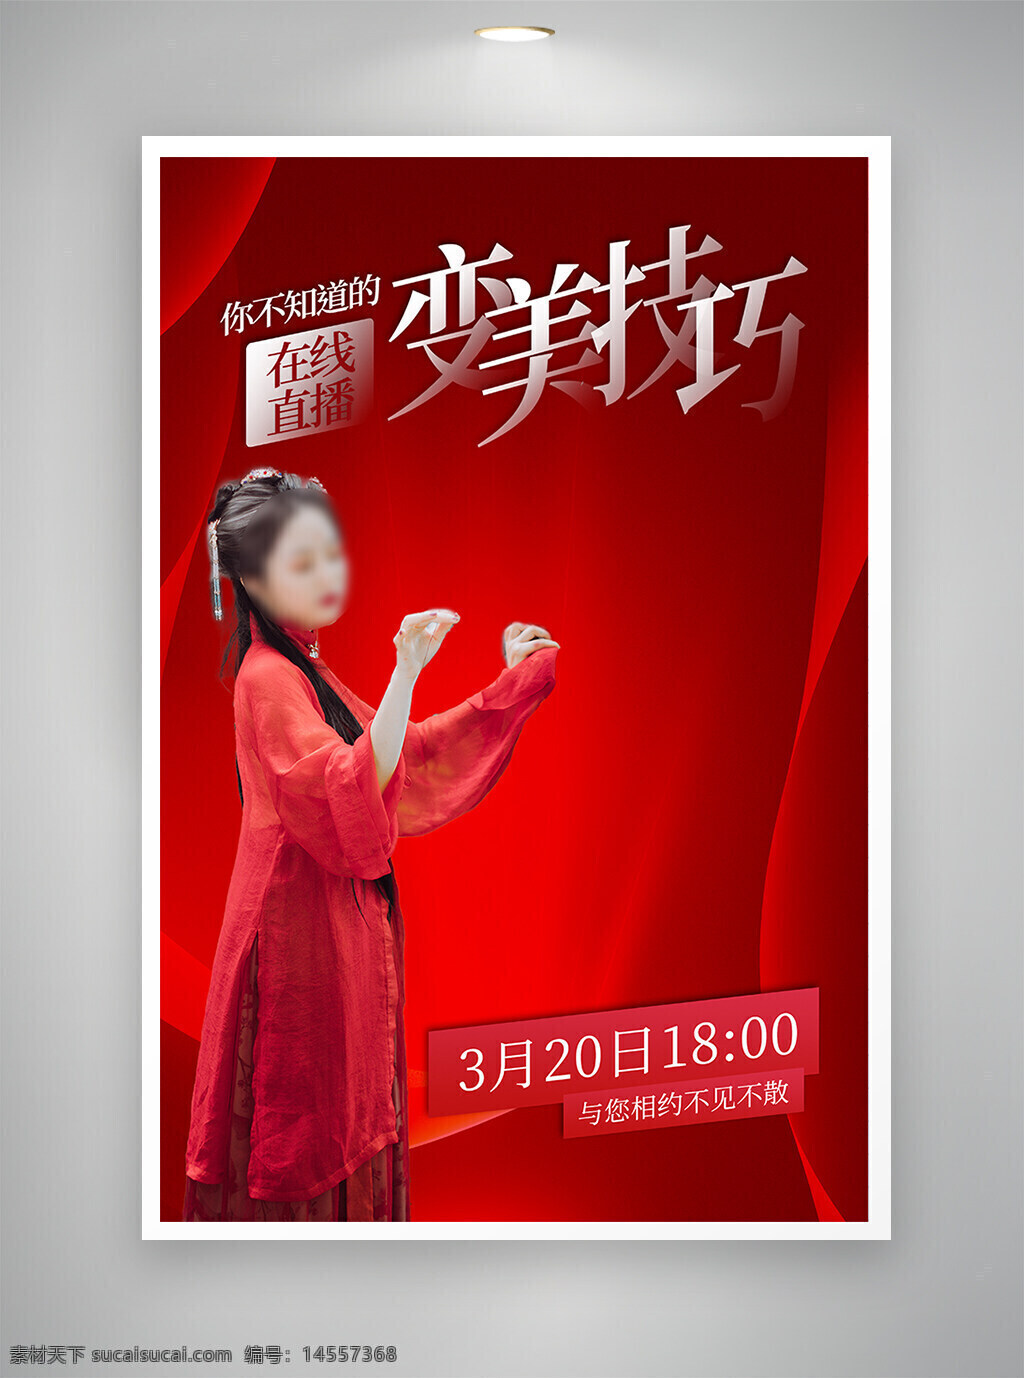 中国风海报 促销海报 节日海报 古风海报 医美海报